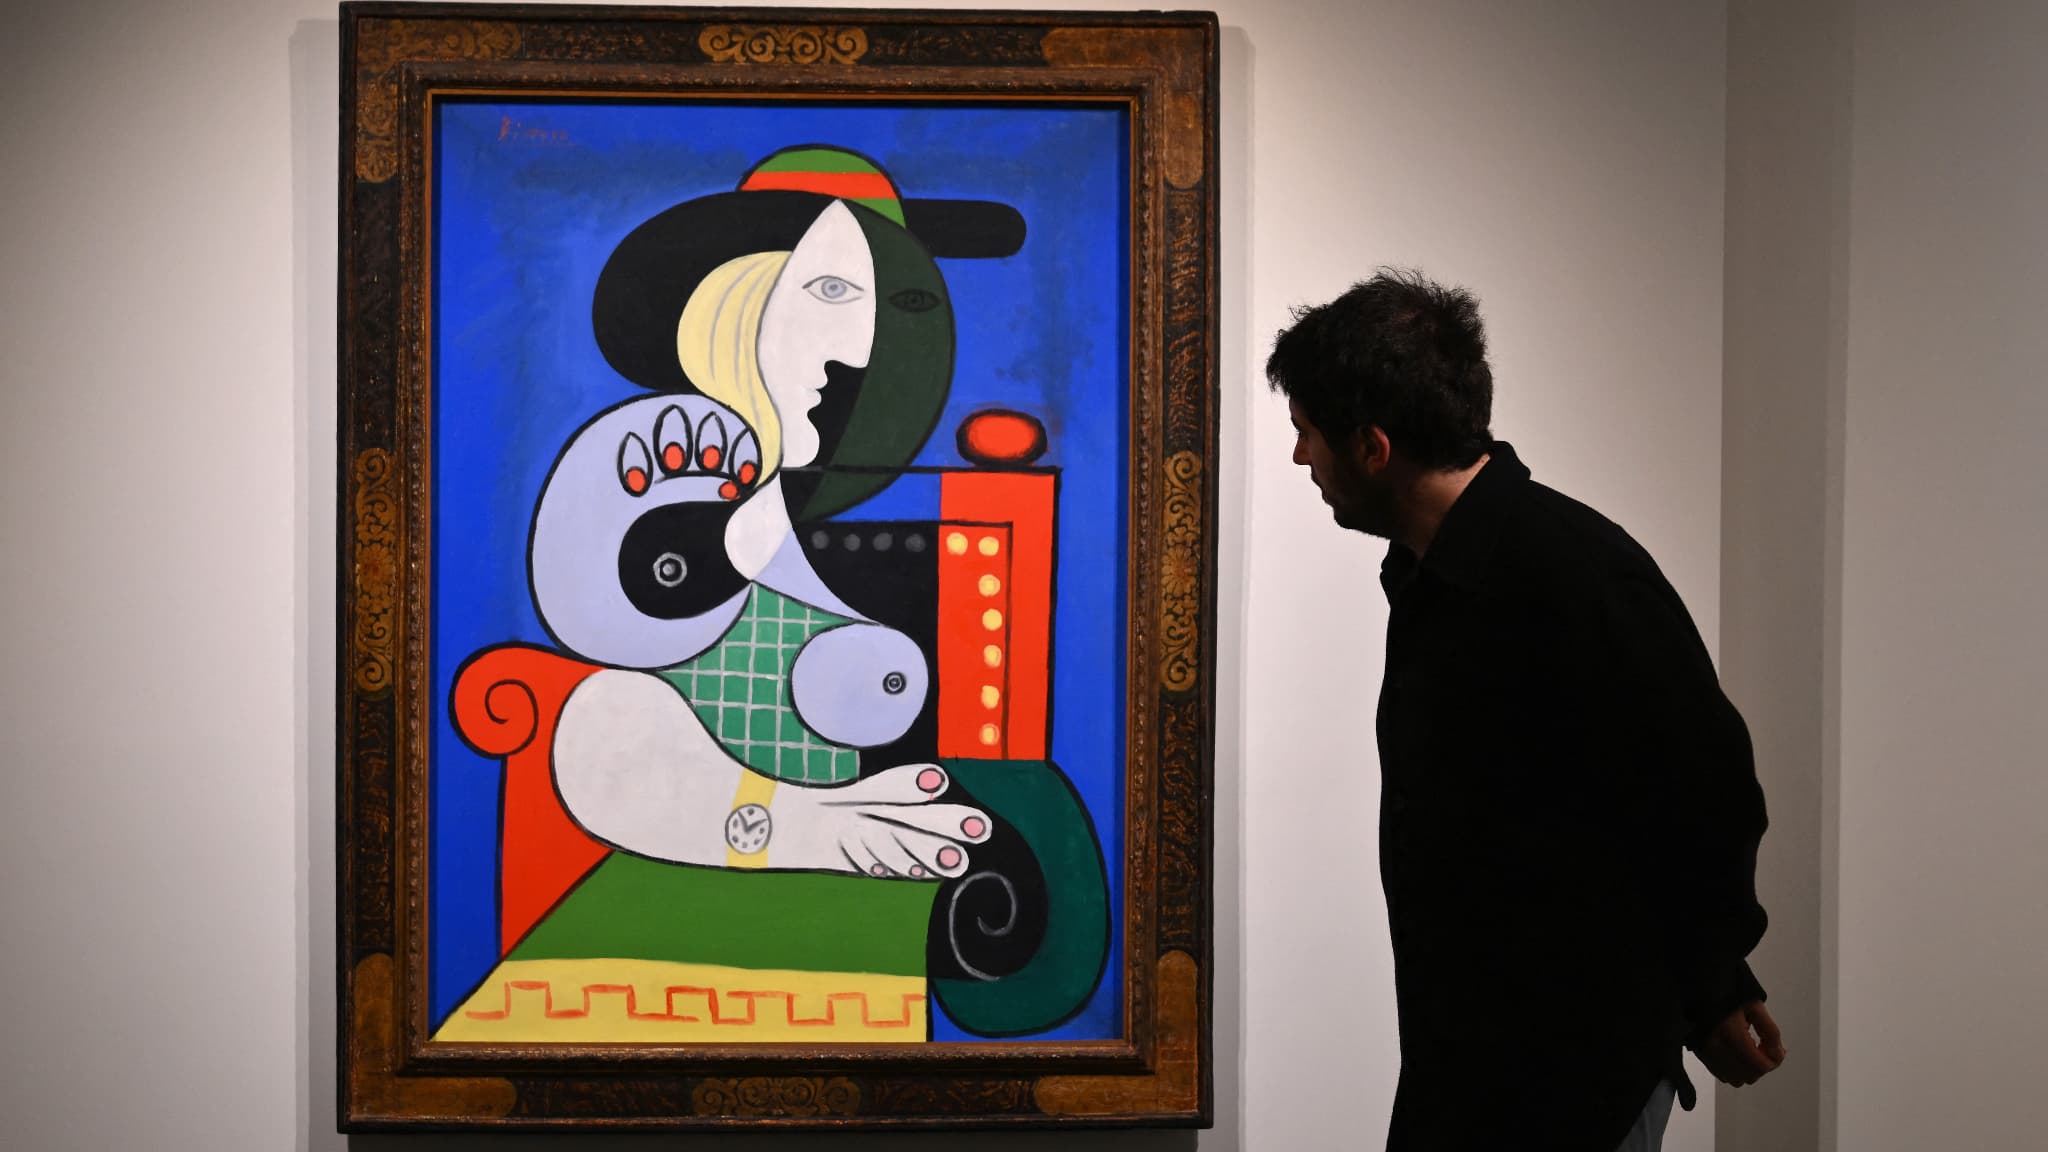 İspanyol ressam Pablo Picasso'nun "ilham perisini" resmettiği ünlü eseri “Femme a la montre” açık artırmada 139.4 milyon dolara satıldı.